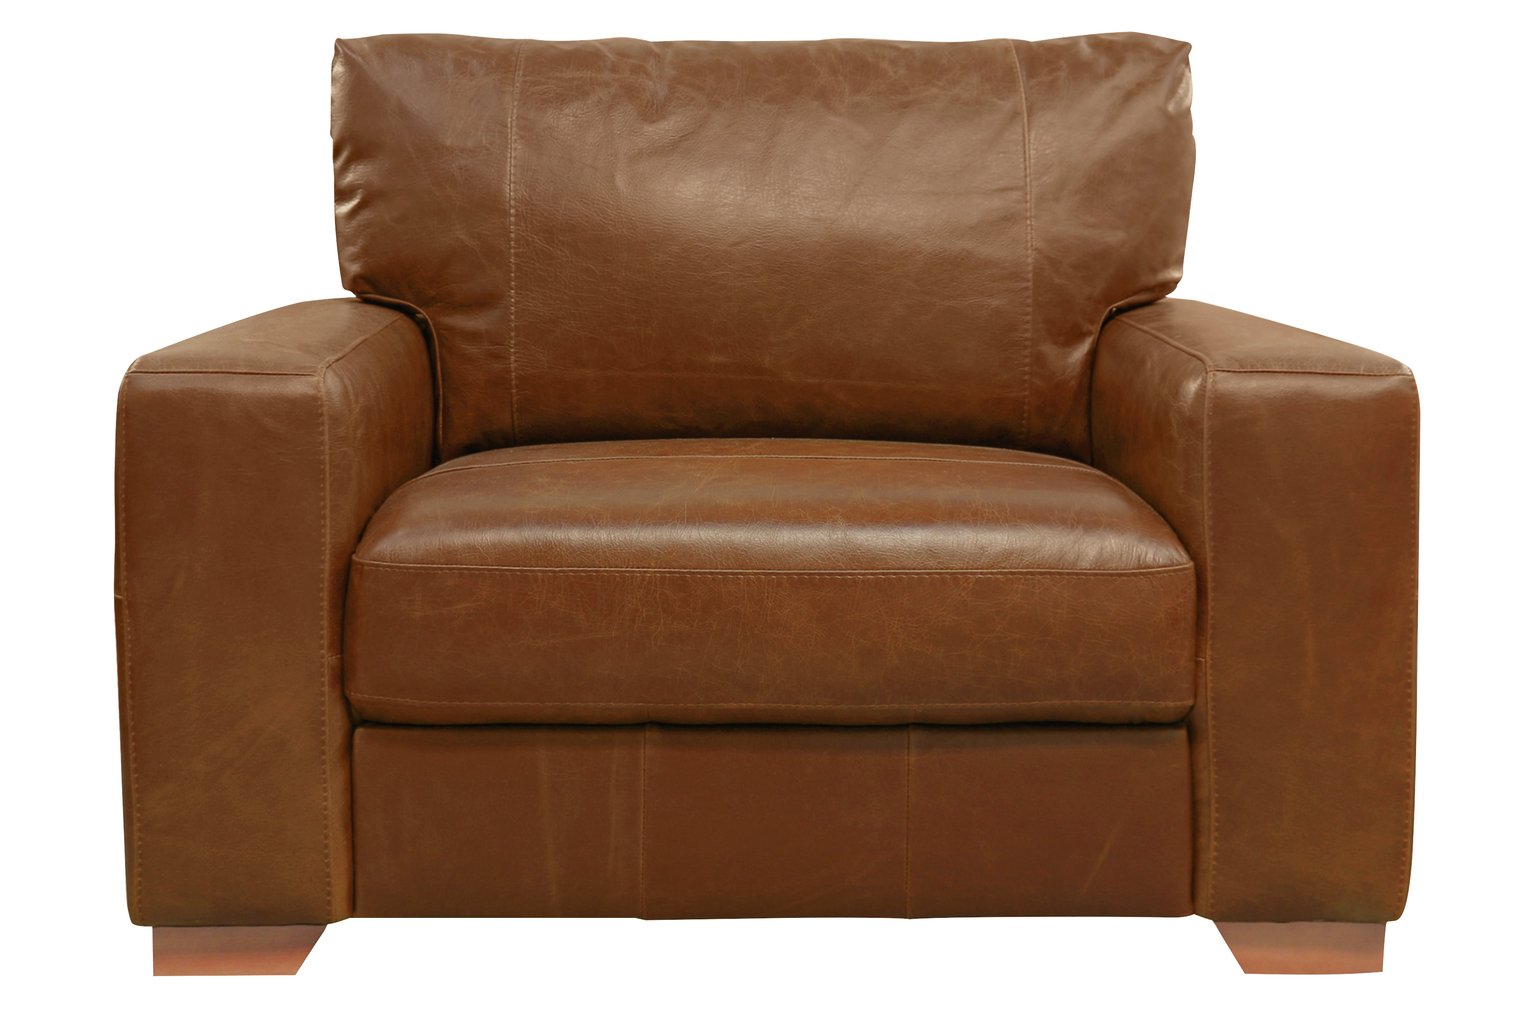 Argos Home Eton Leather Cuddle Chair - Tan